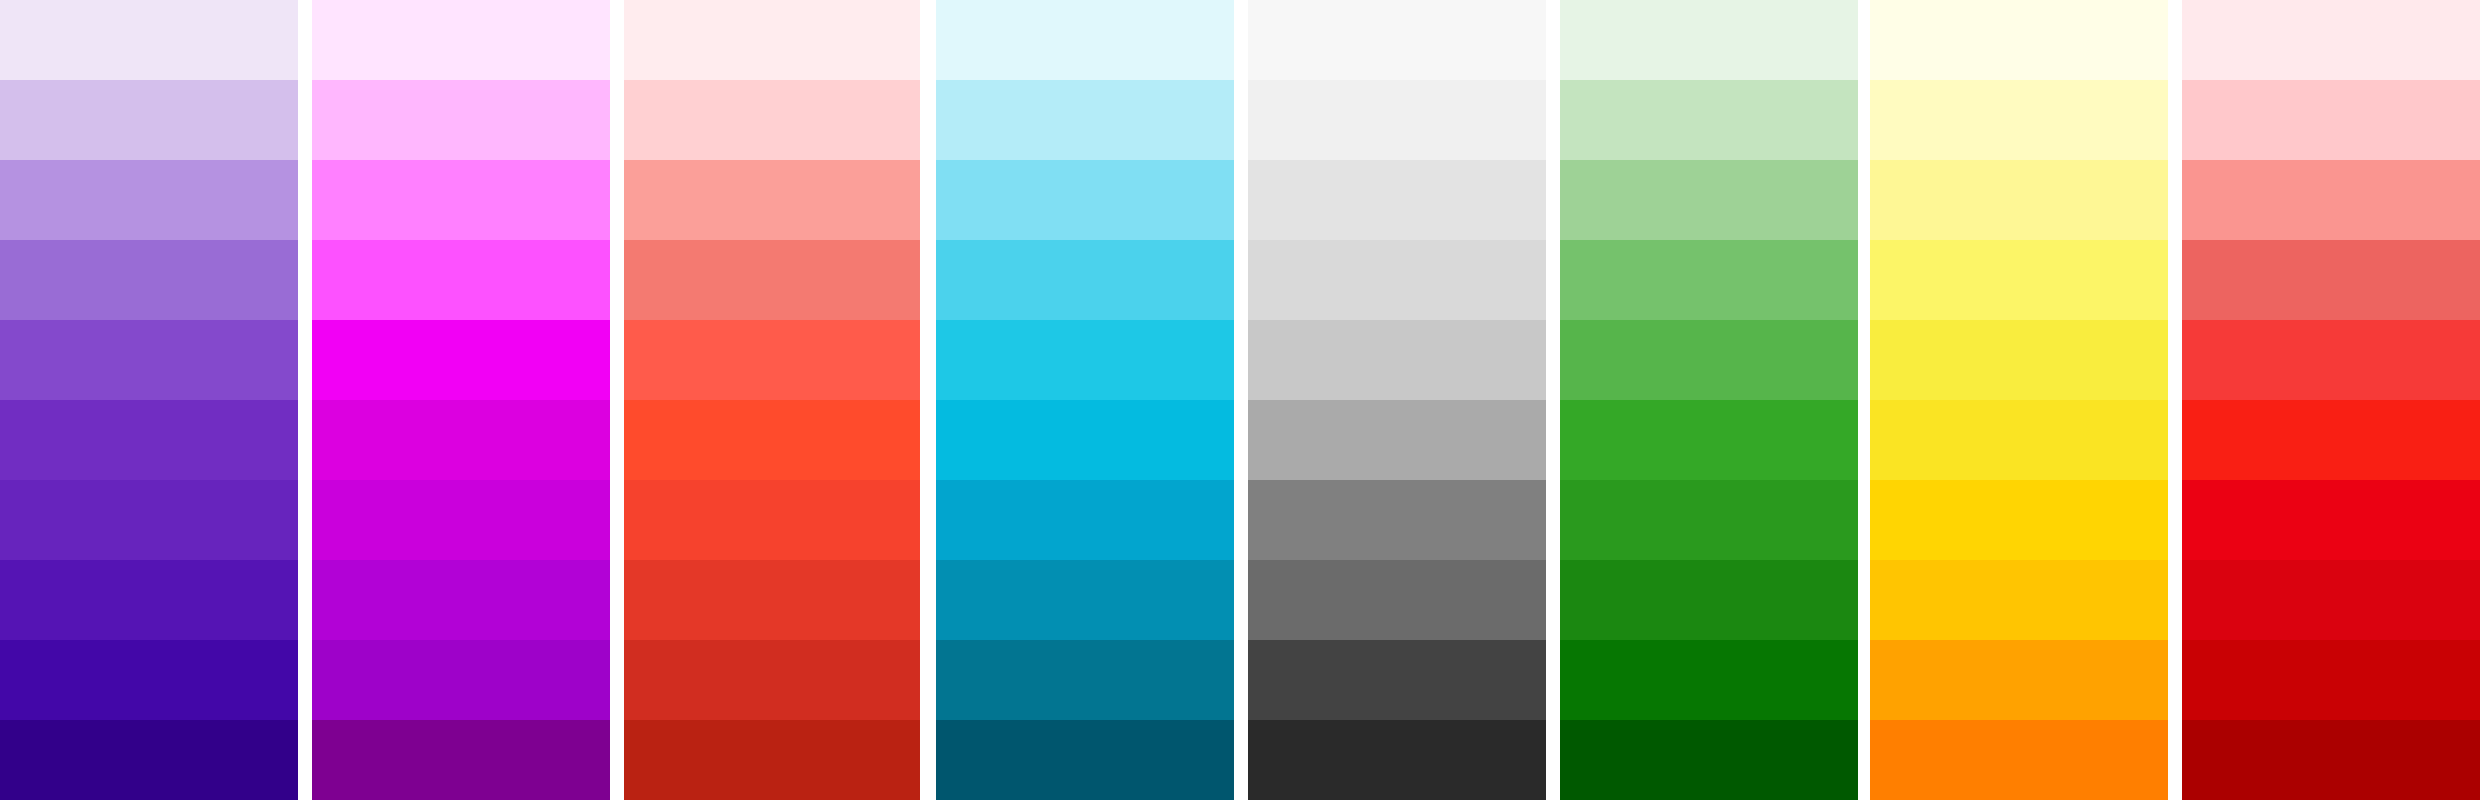 BT_full_digital_colour_pallette